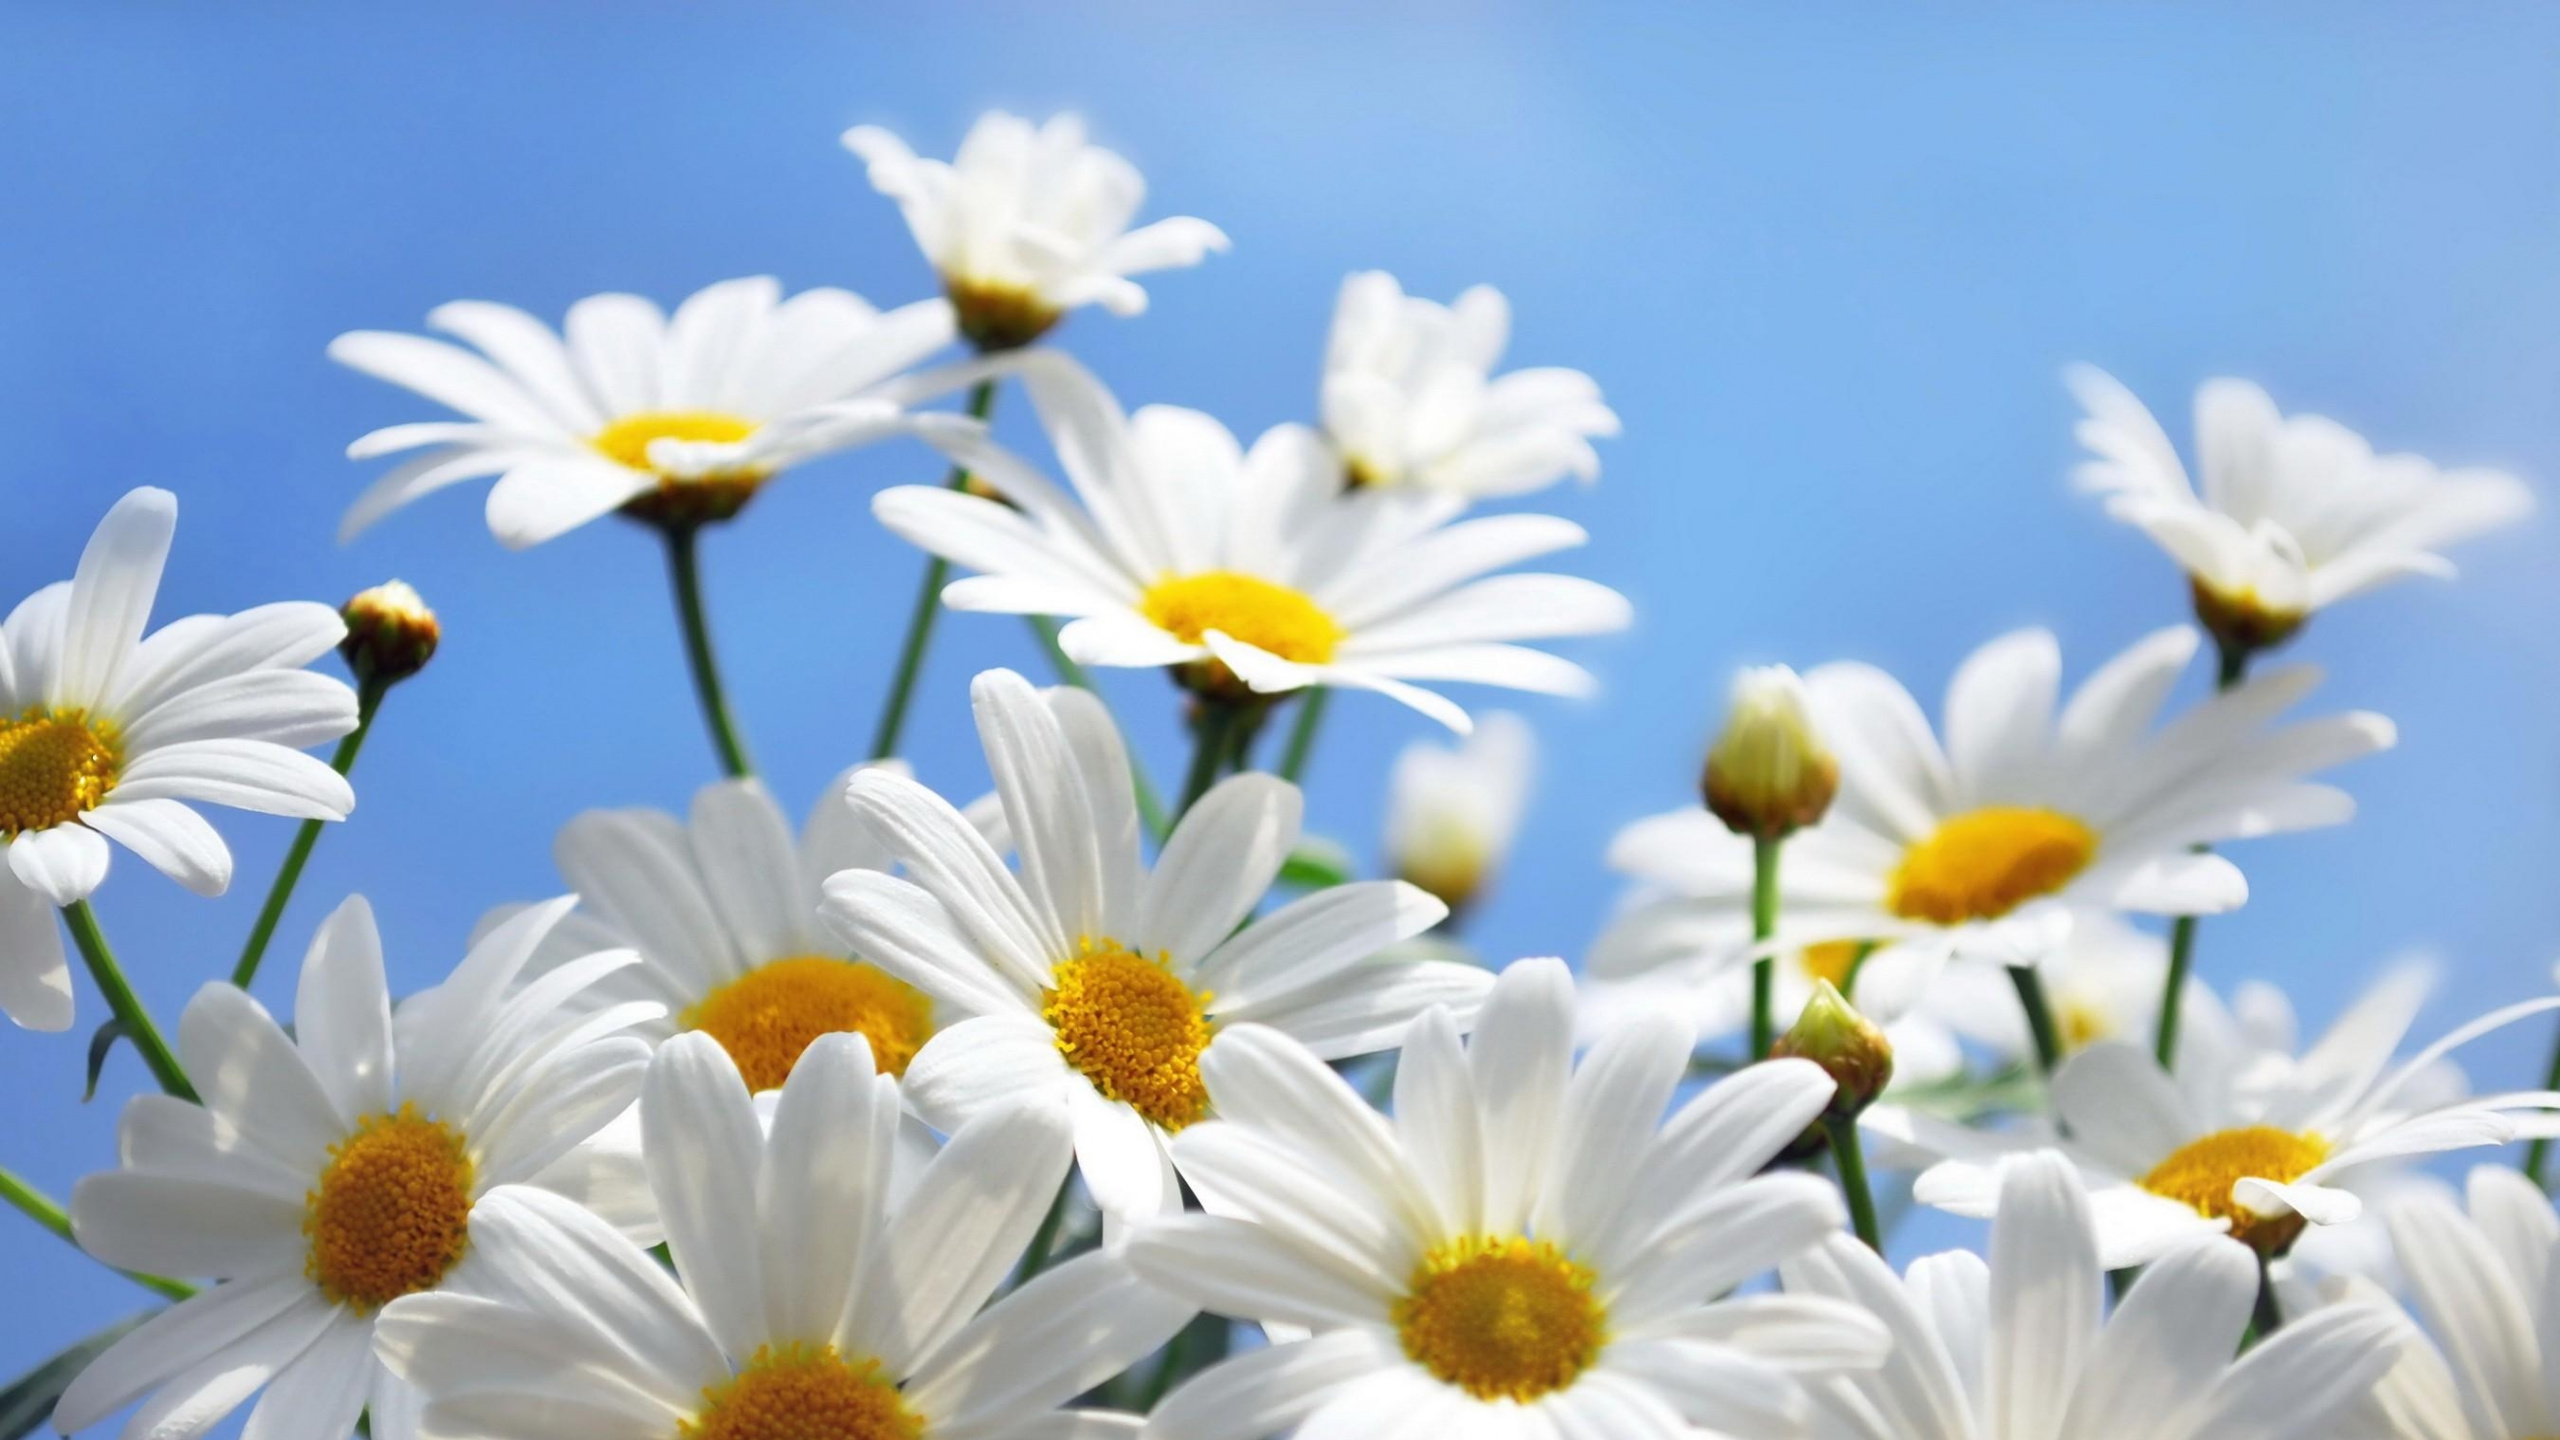 共同的菊花, Oxeye菊花, 玛格丽的菊花, Daisy的家庭, 白色 壁纸 2560x1440 允许